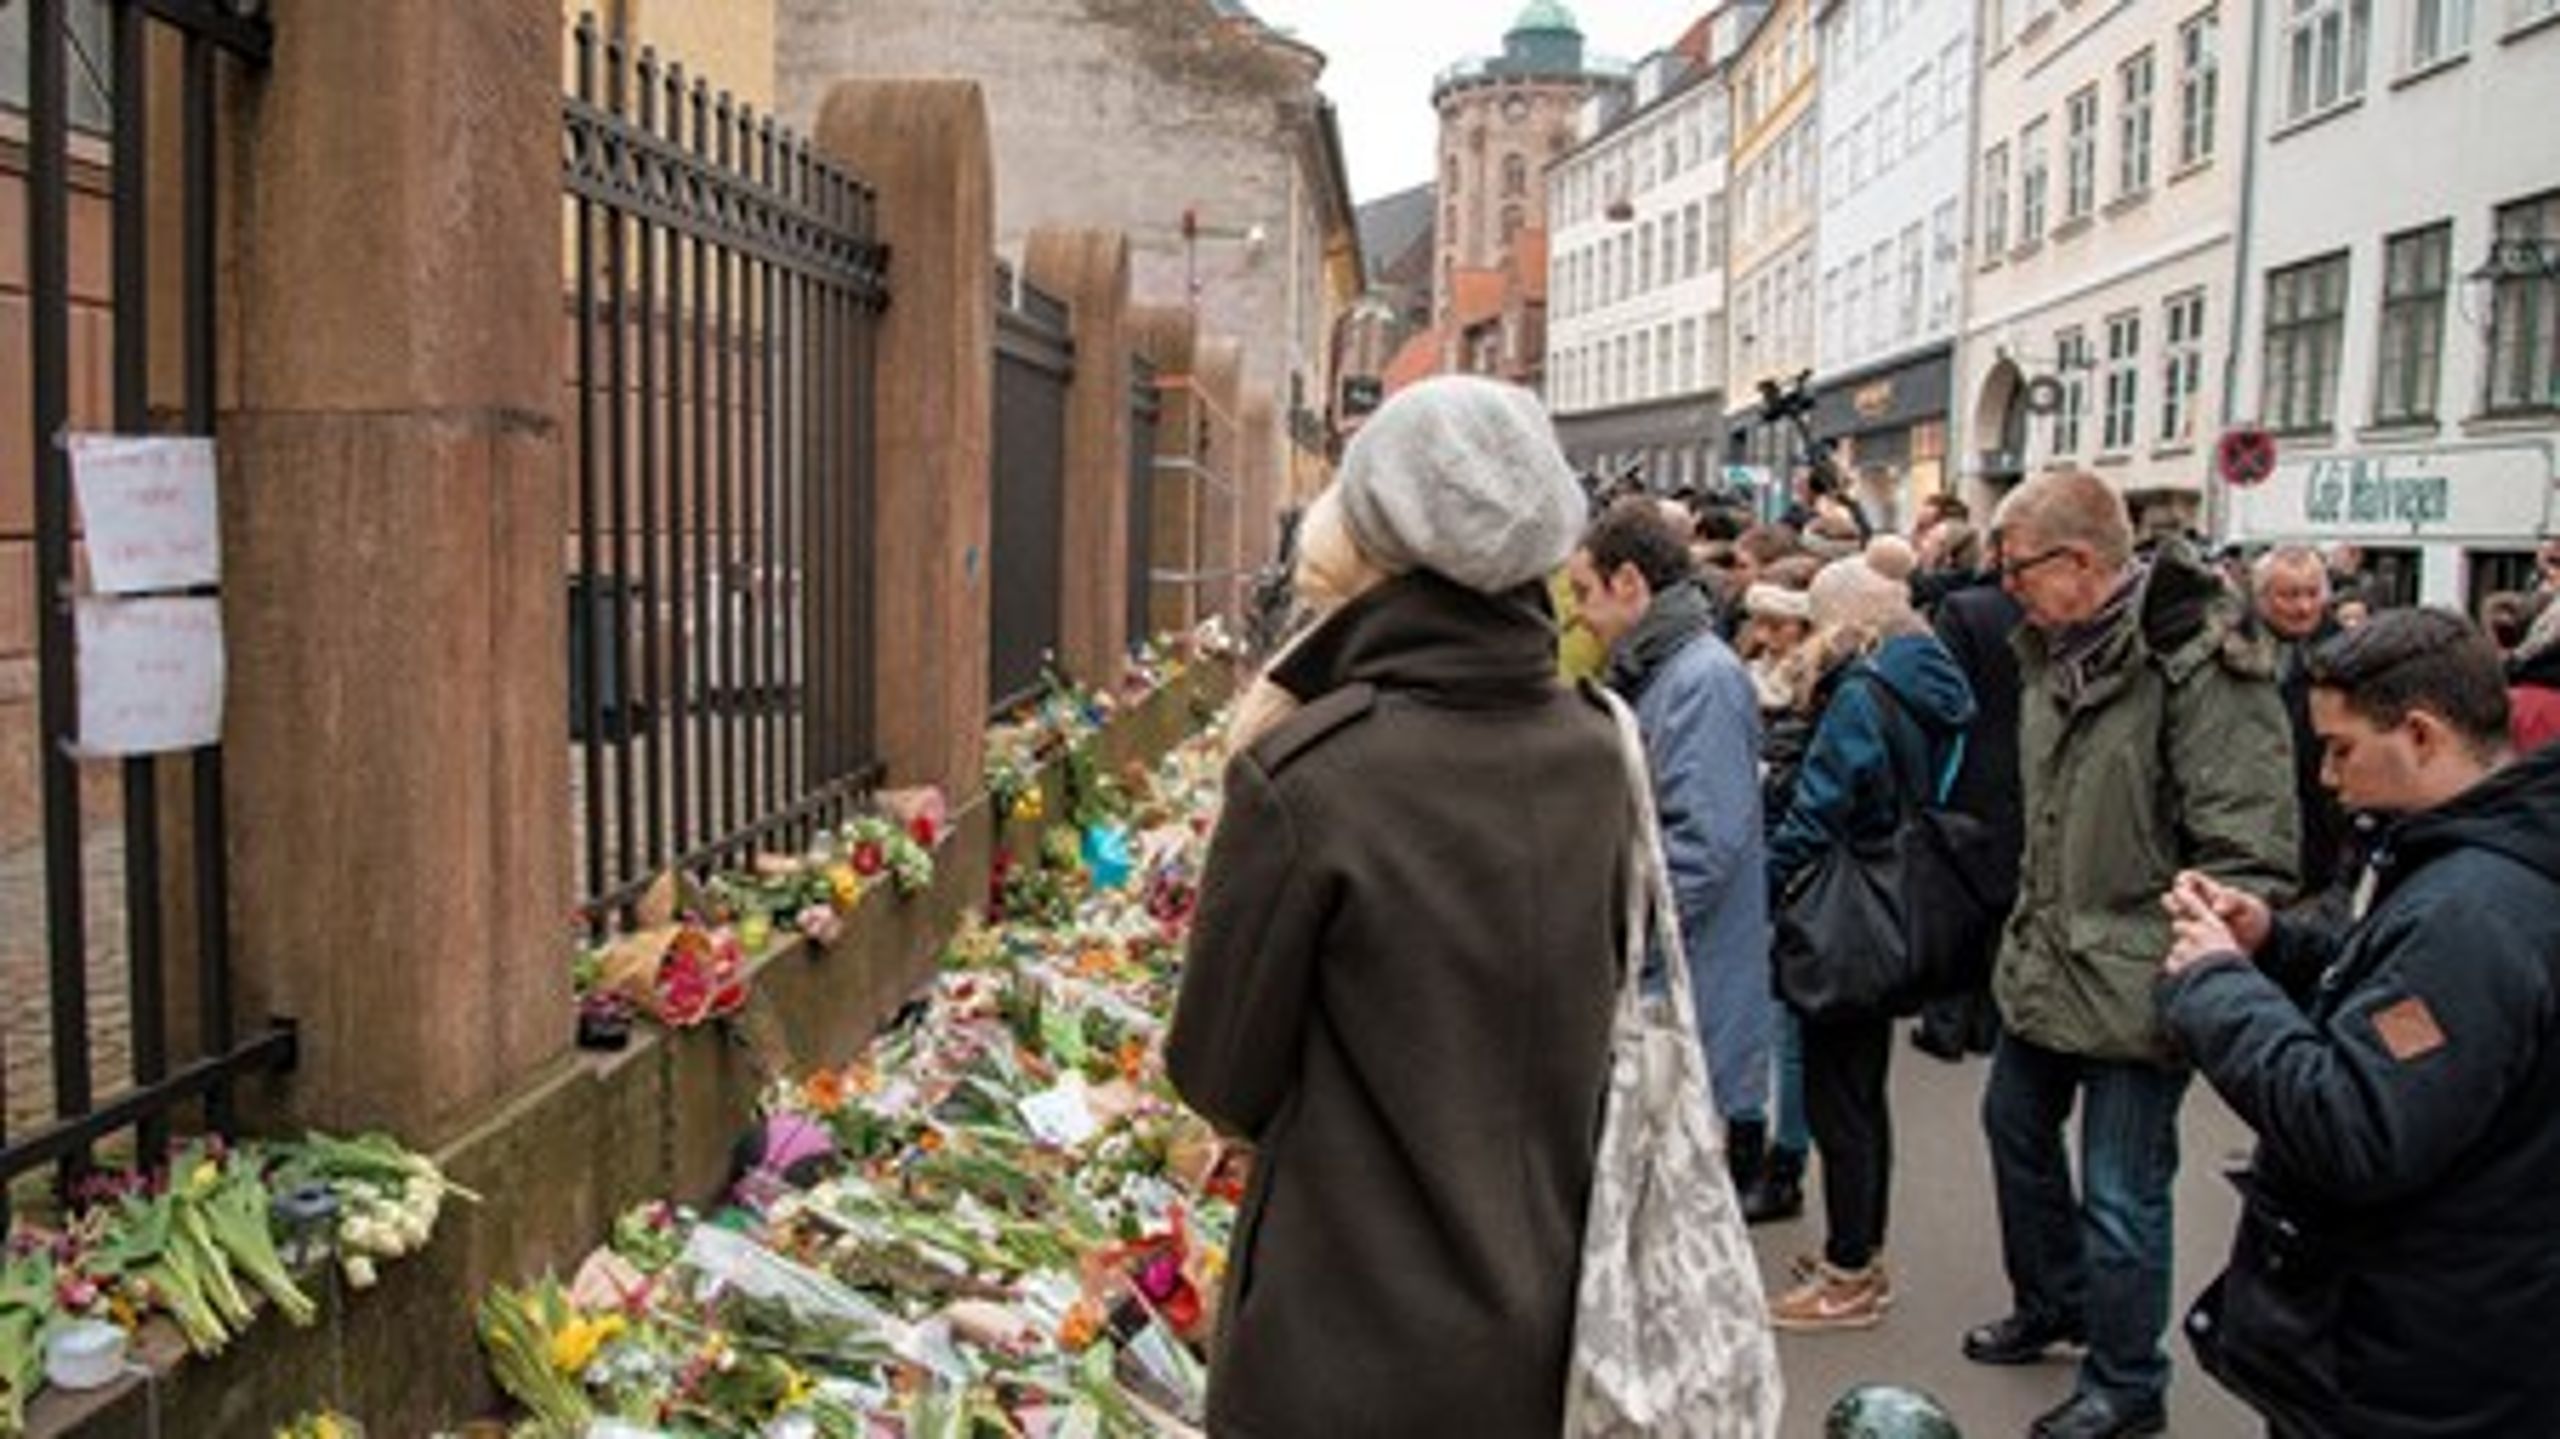 Den kommende uge i dansk politik bliver præget af weekendens skudepisoder i København.&nbsp;<br>Danskerne lægger blomster langs synagogen i Krystalgade, hvor en mand blev dræbt.&nbsp;